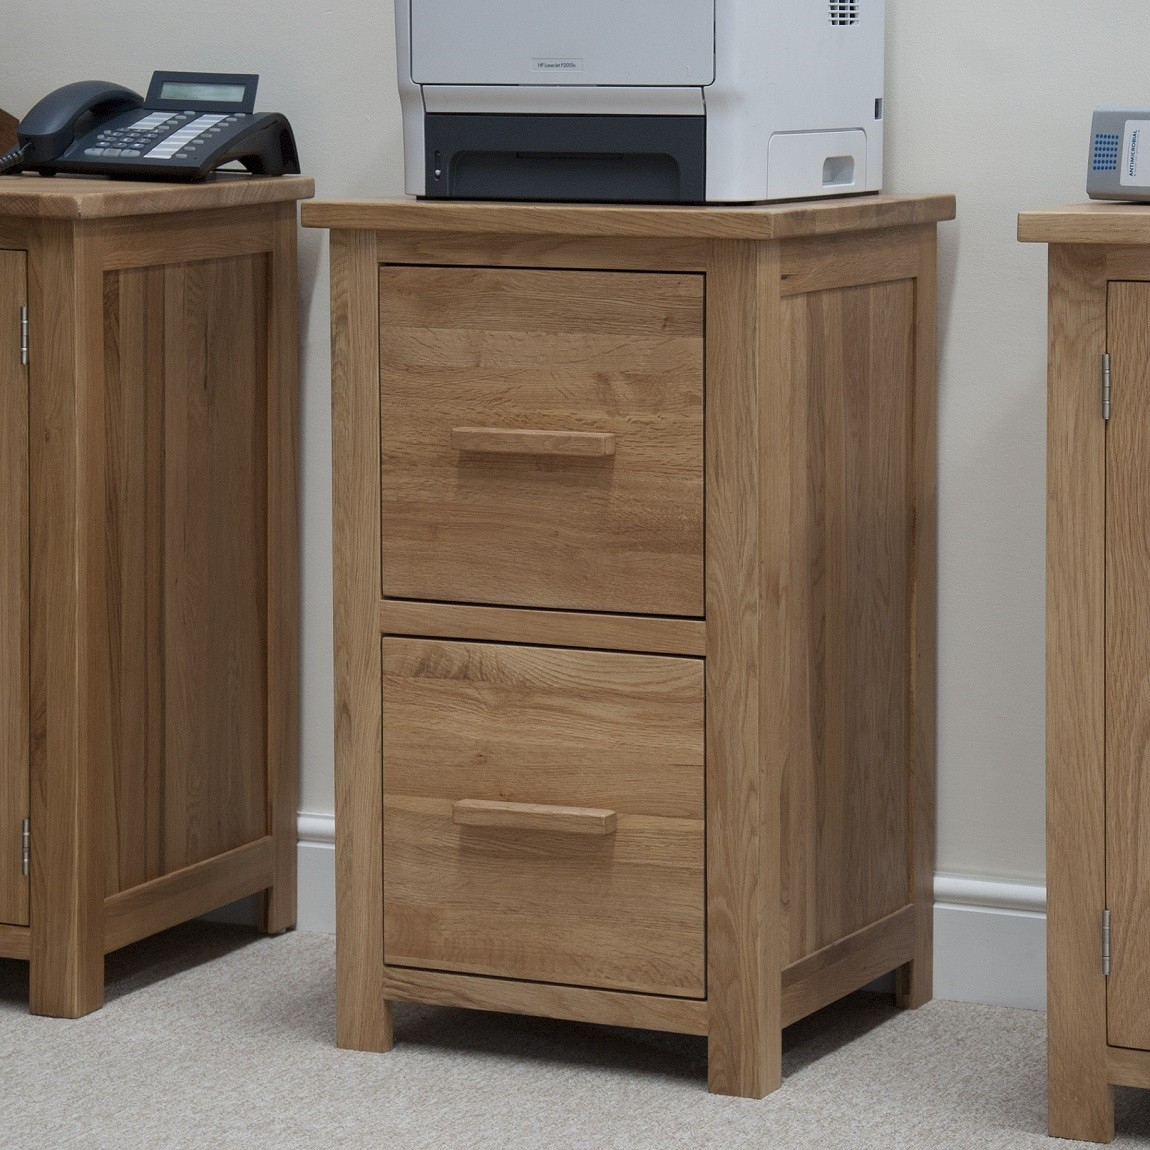 Opus Solid Oak Filing Cabinet Oak Furniture Uk intended for proportions 1150 X 1150